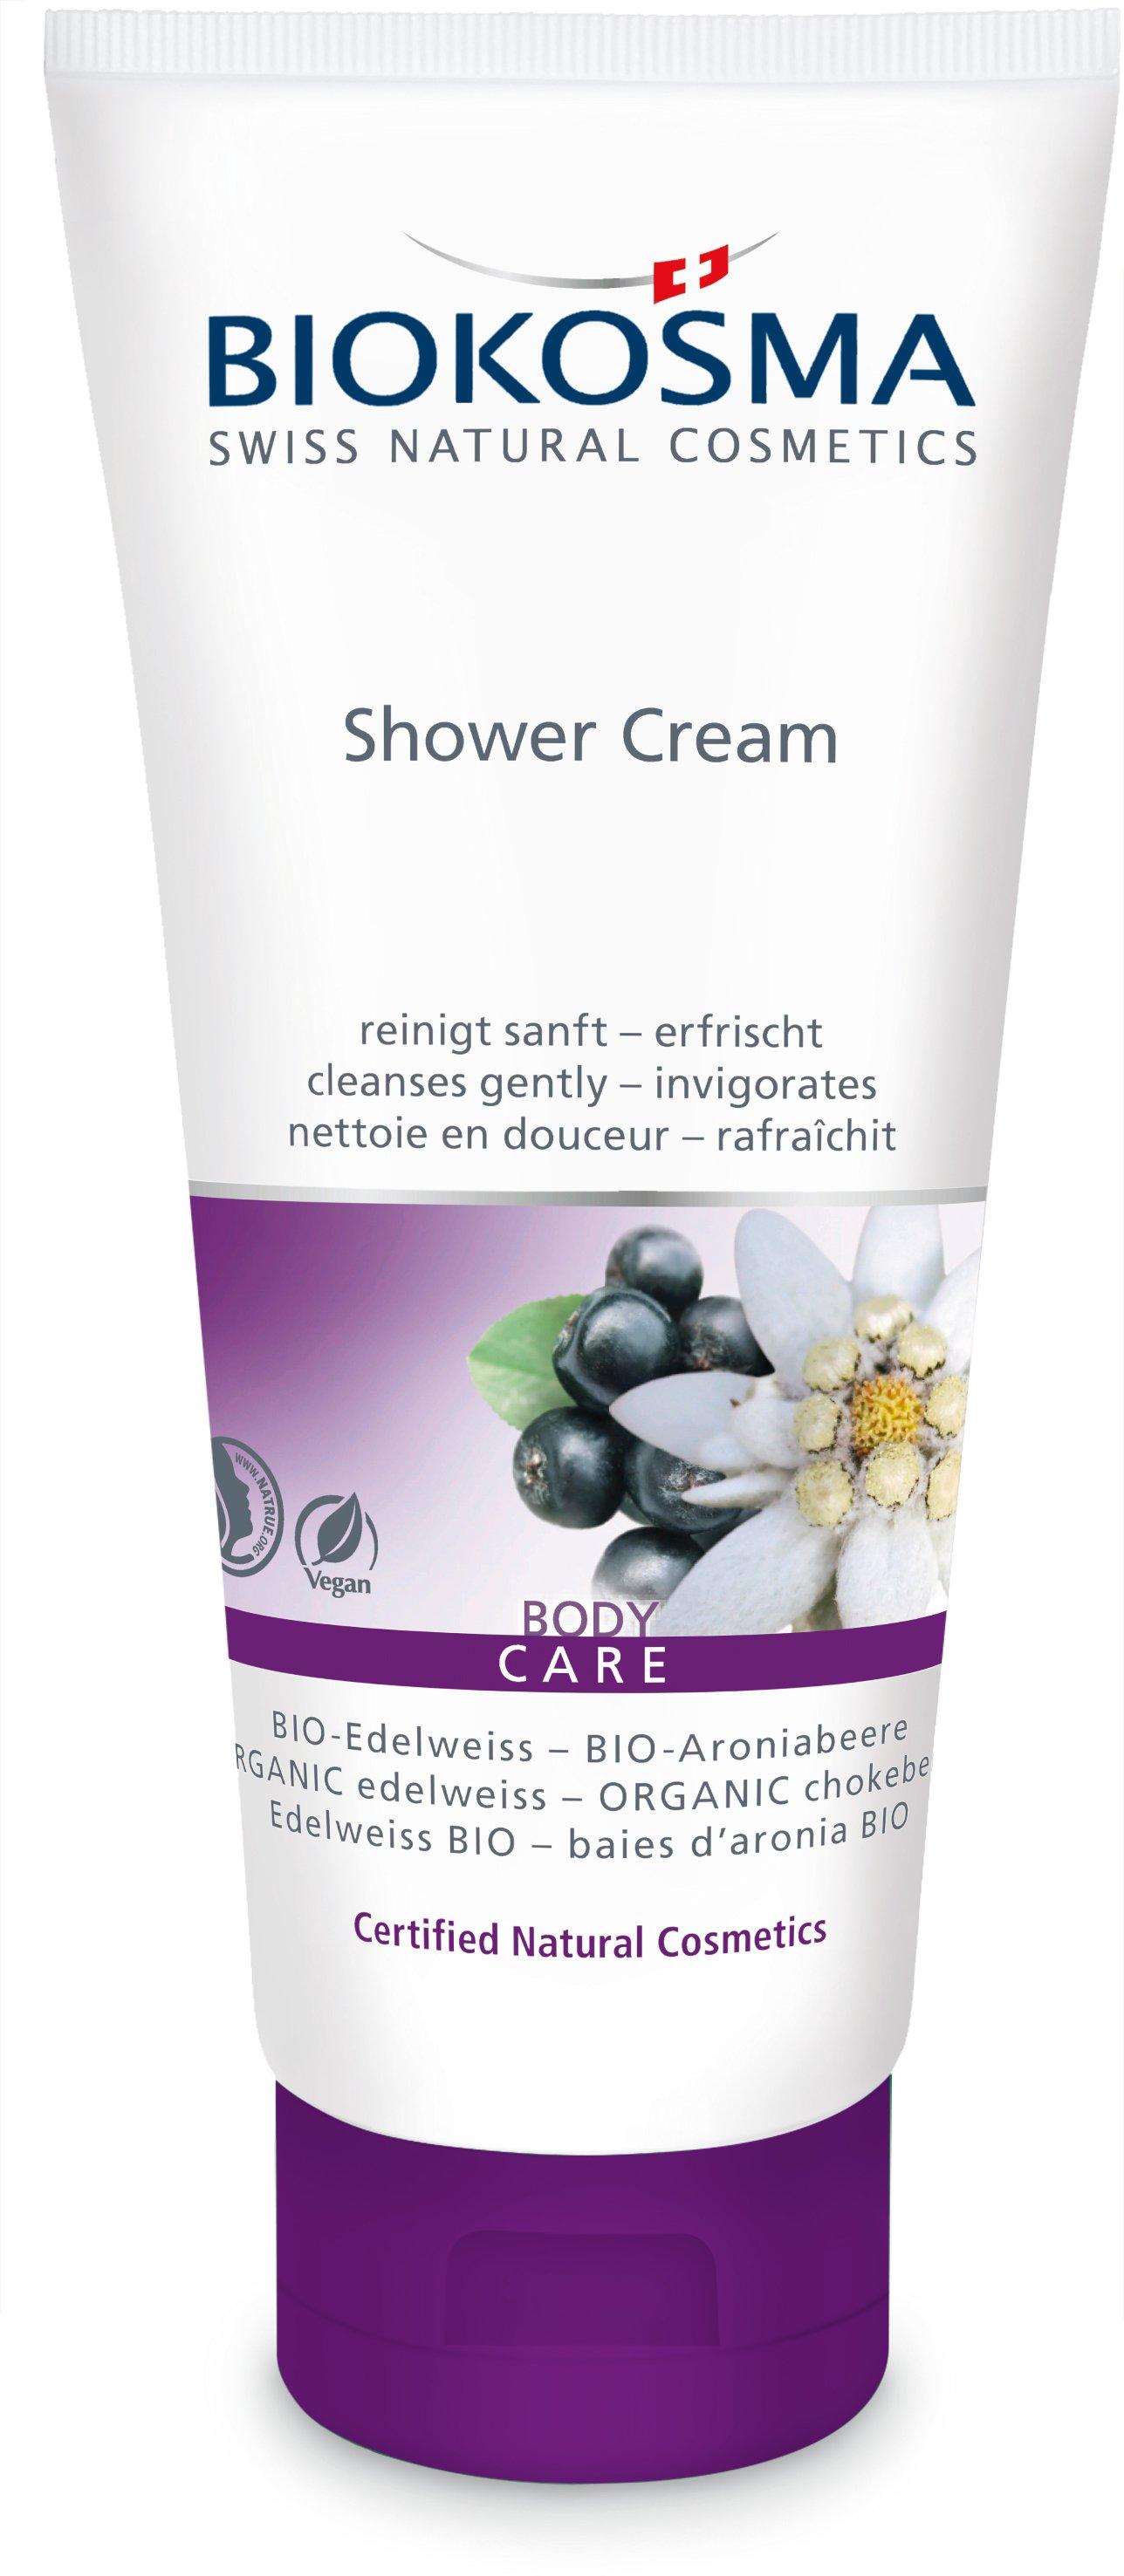 Image of BIOKOSMA Shower Cream BIO-Edelweiss - BIO-Aroniabeere - 200ml